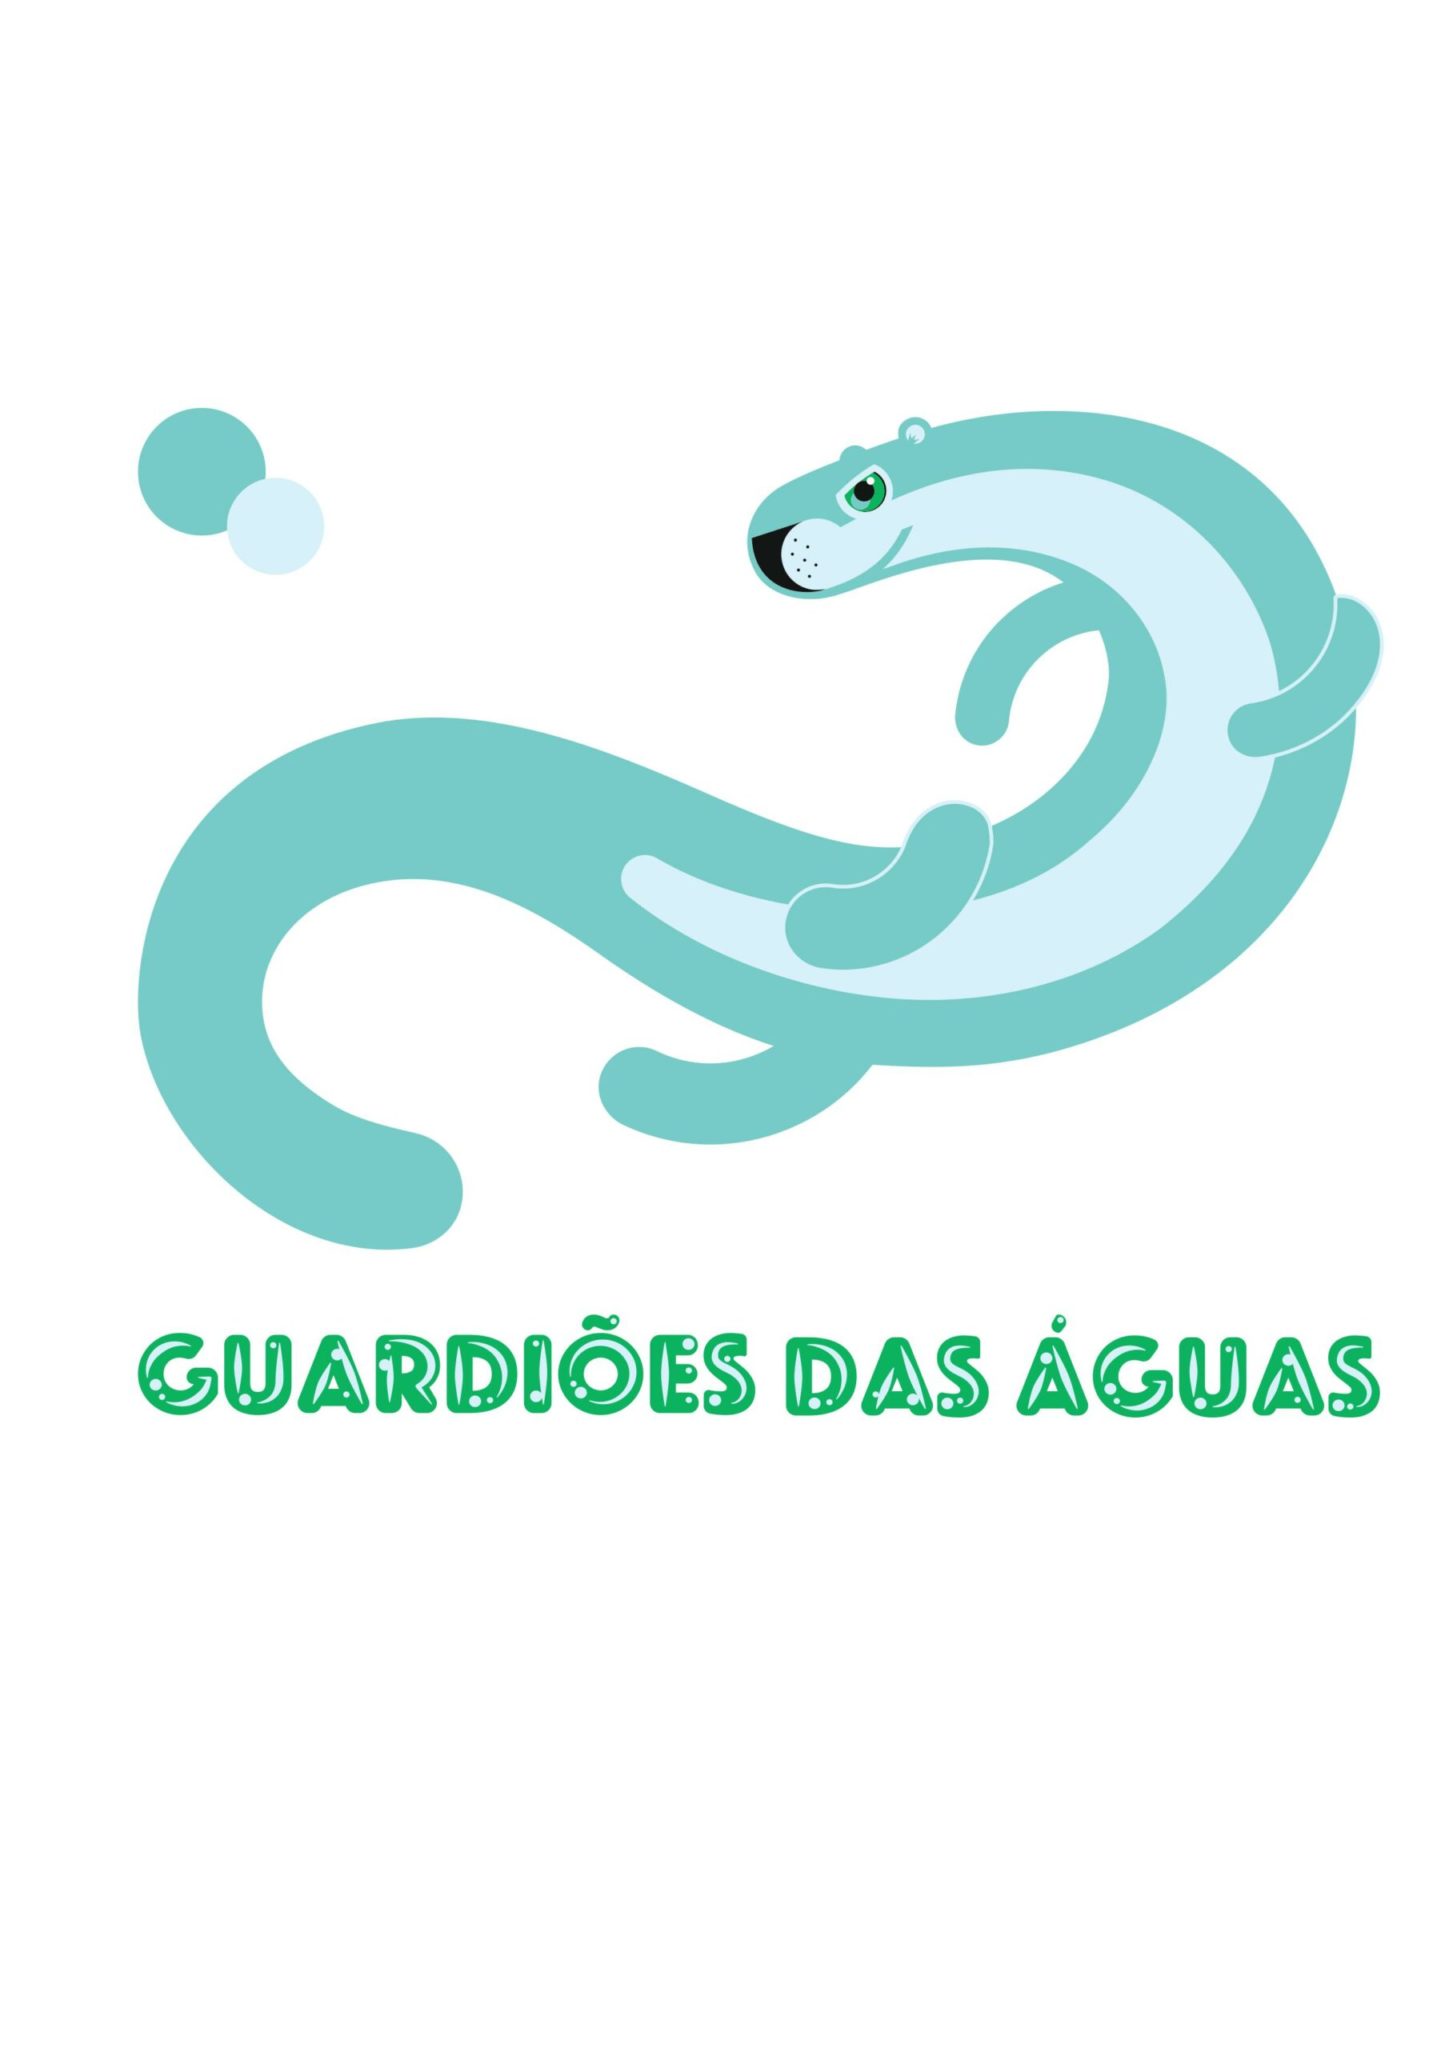 Bonito: Projeto Guardiões das Águas abre inscrições para voluntários